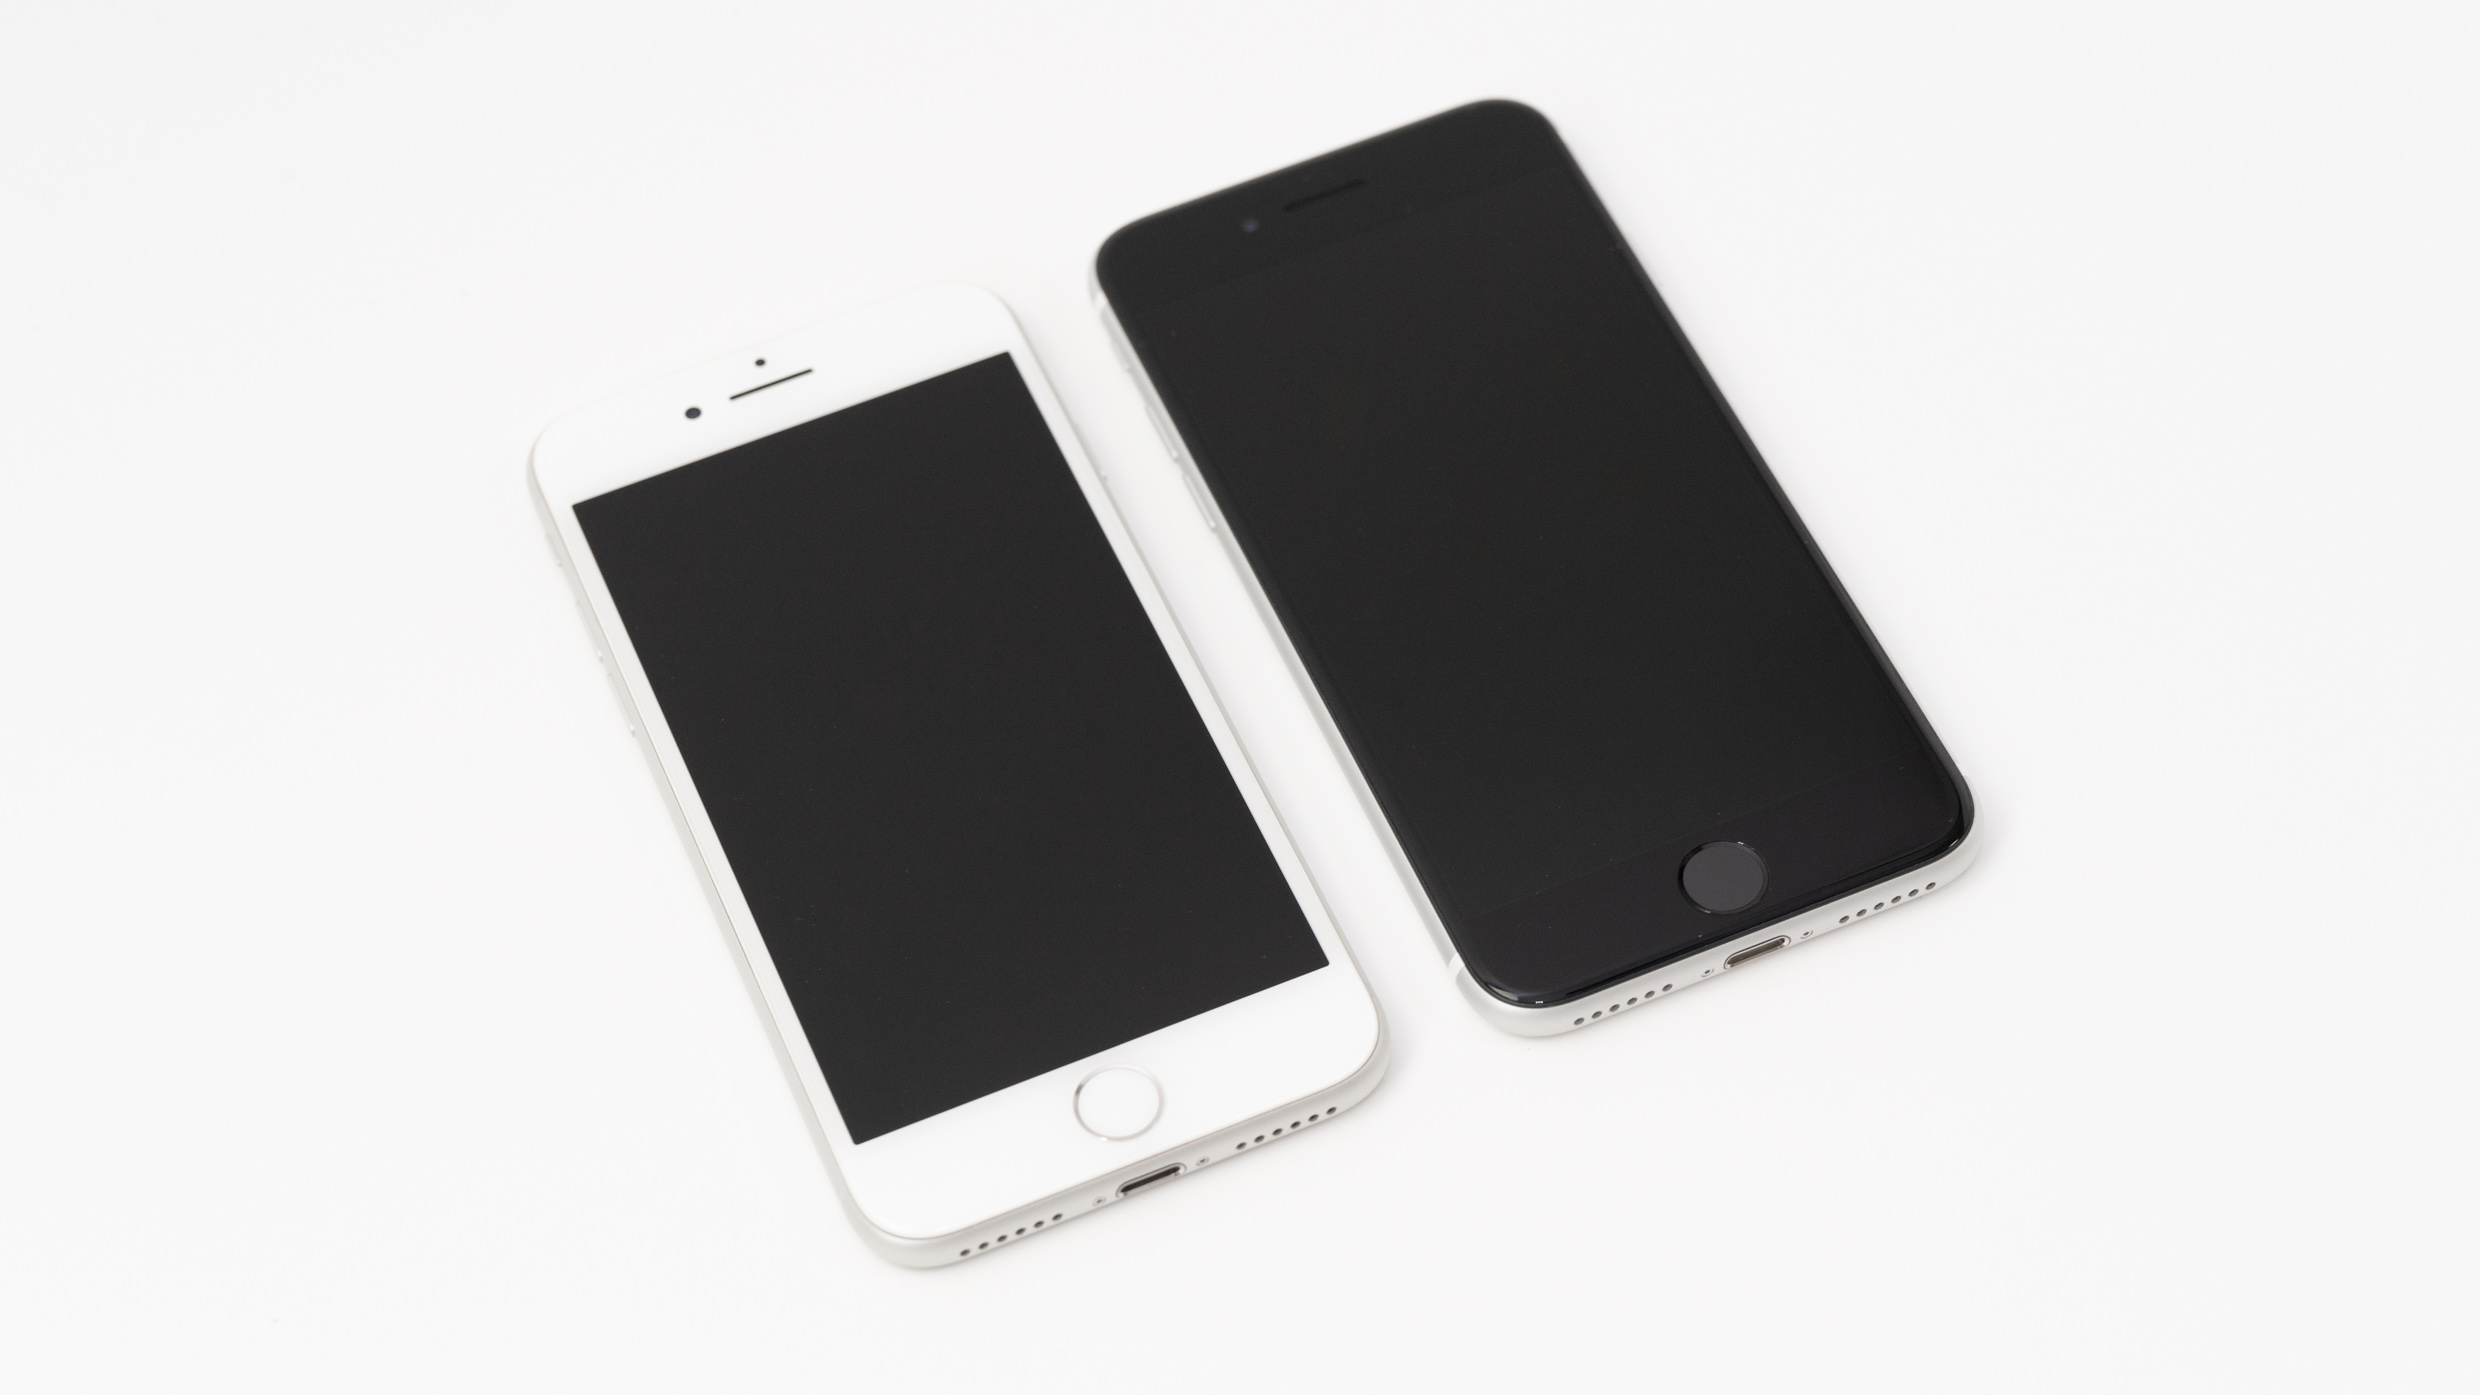 Iphone Se 2世代目 とiphone 8の見た目の細かい違いを比較 Appleロゴの位置の他 色味等も変更に ガジェットショット